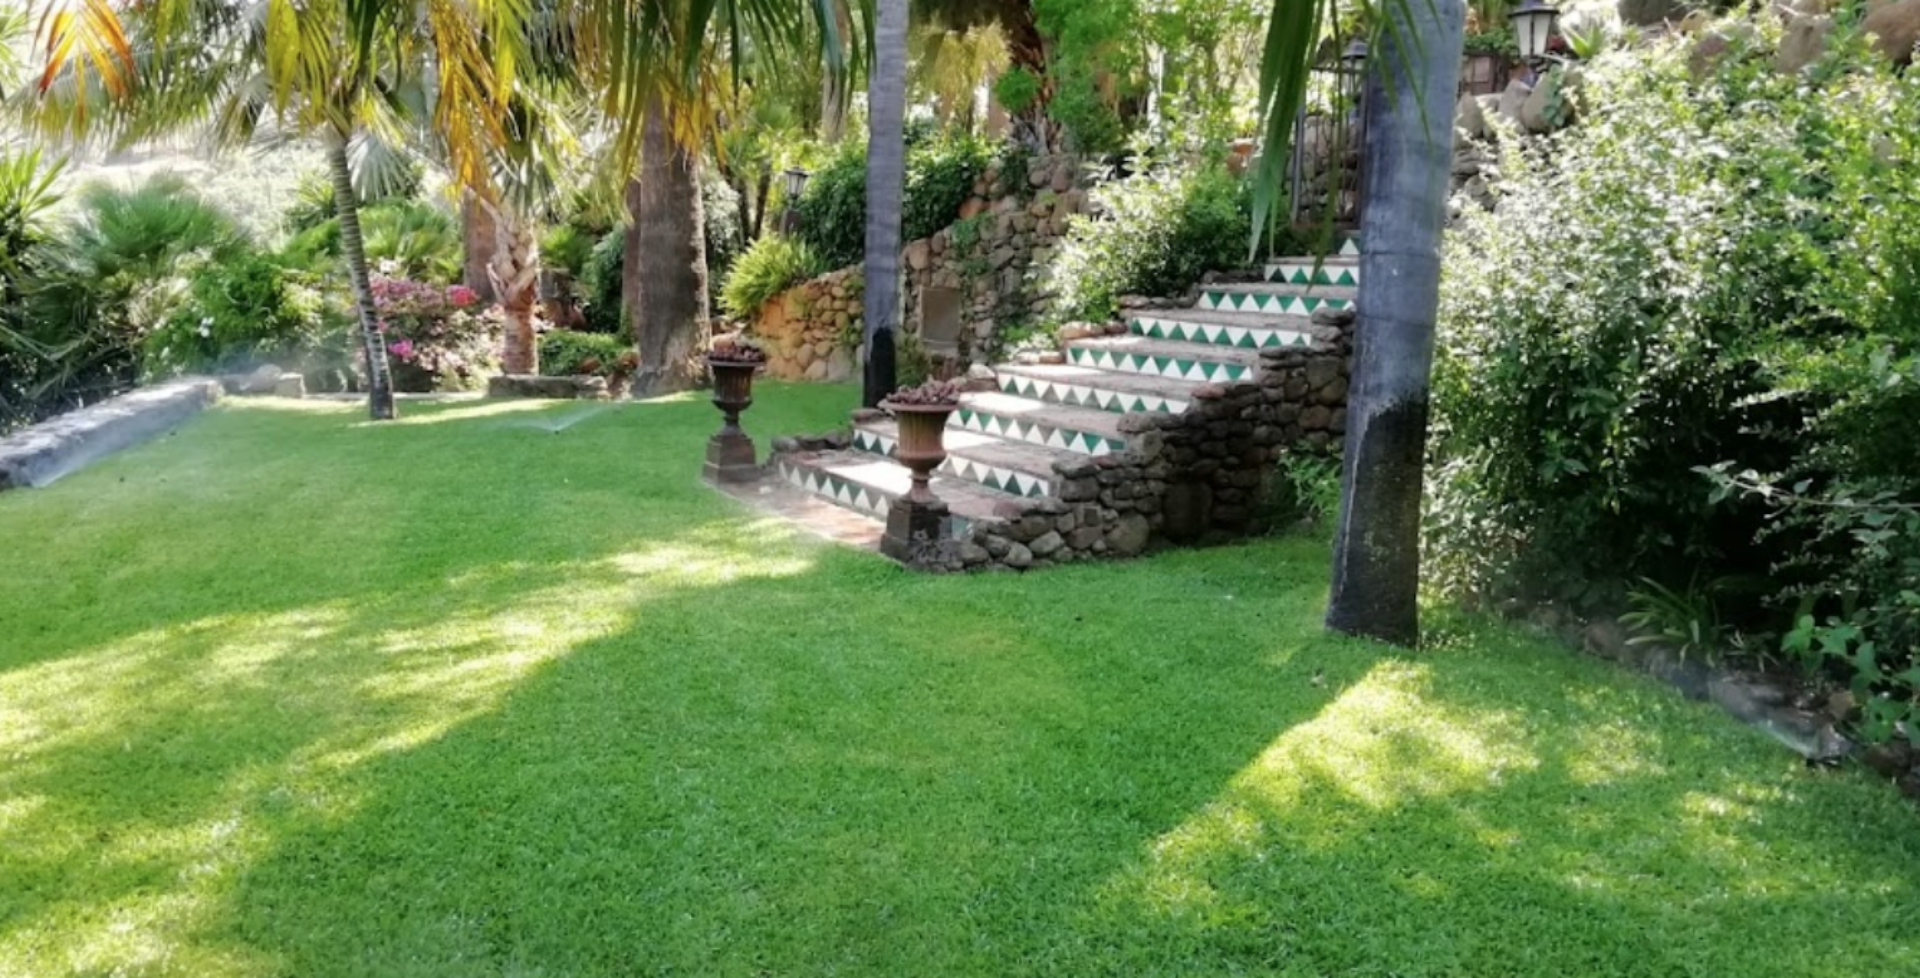 Cortijo garden